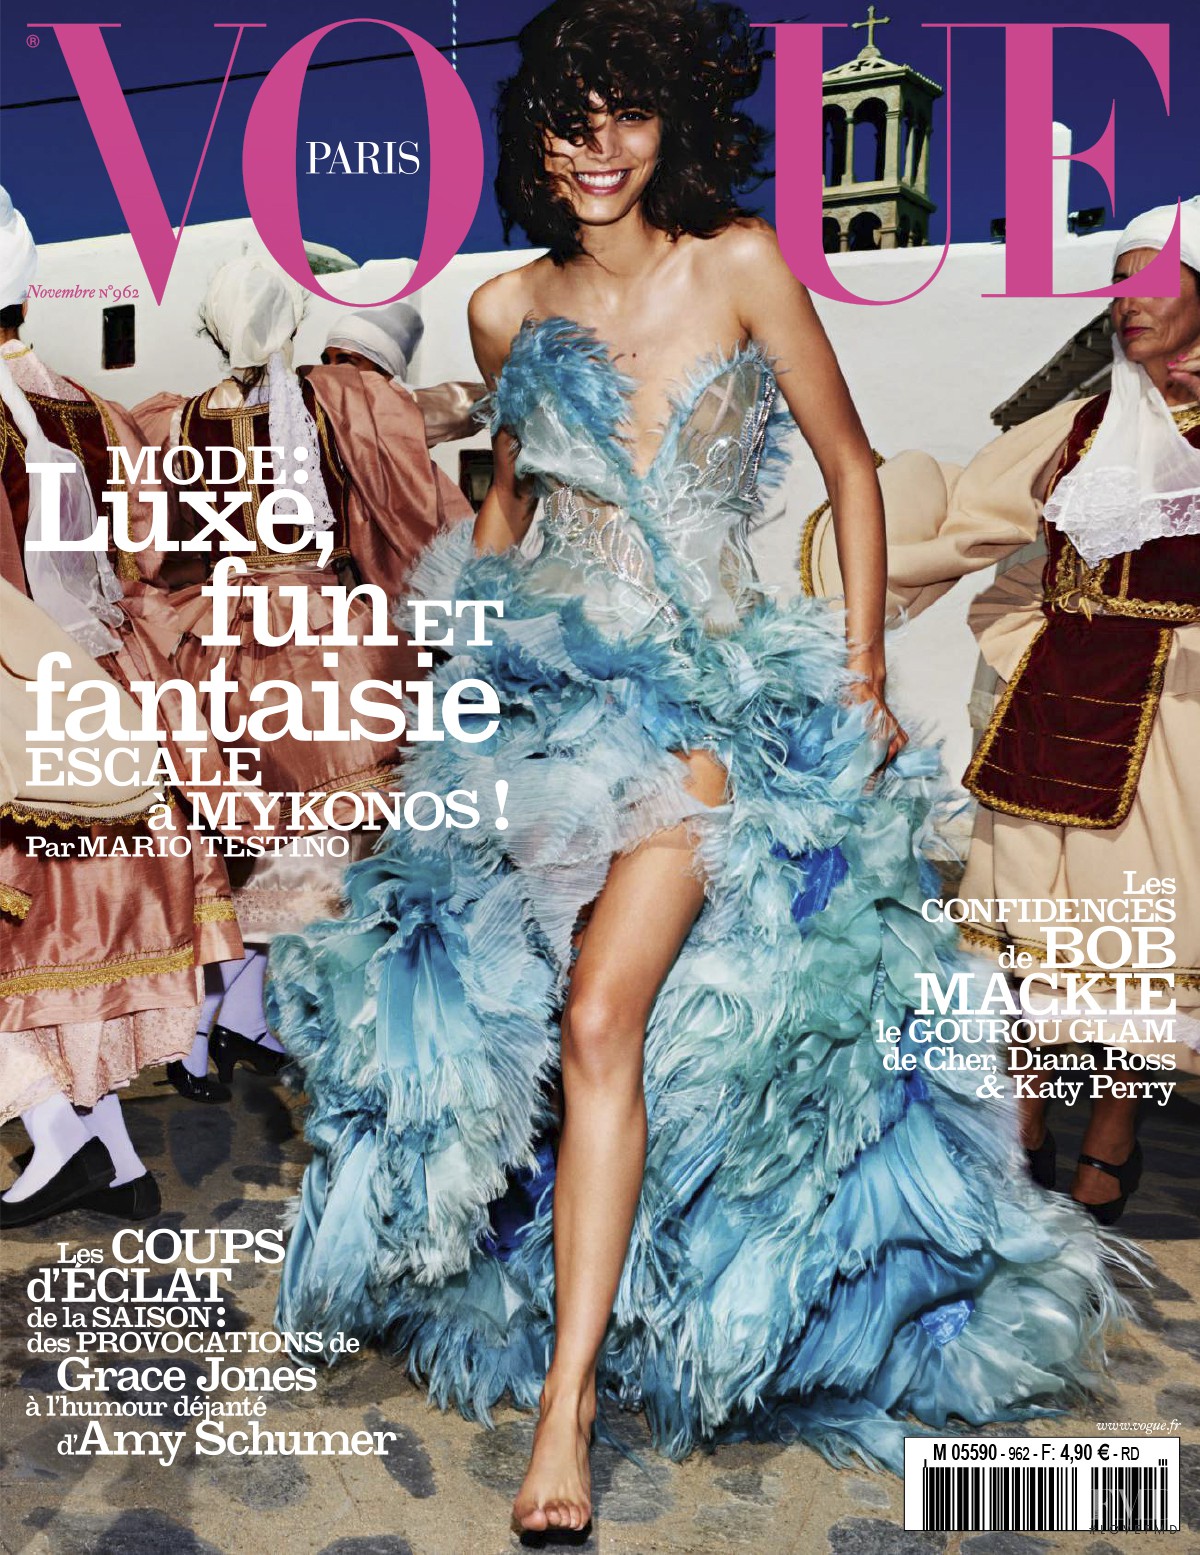 La nueva portada de Vogue París | itfashion.com